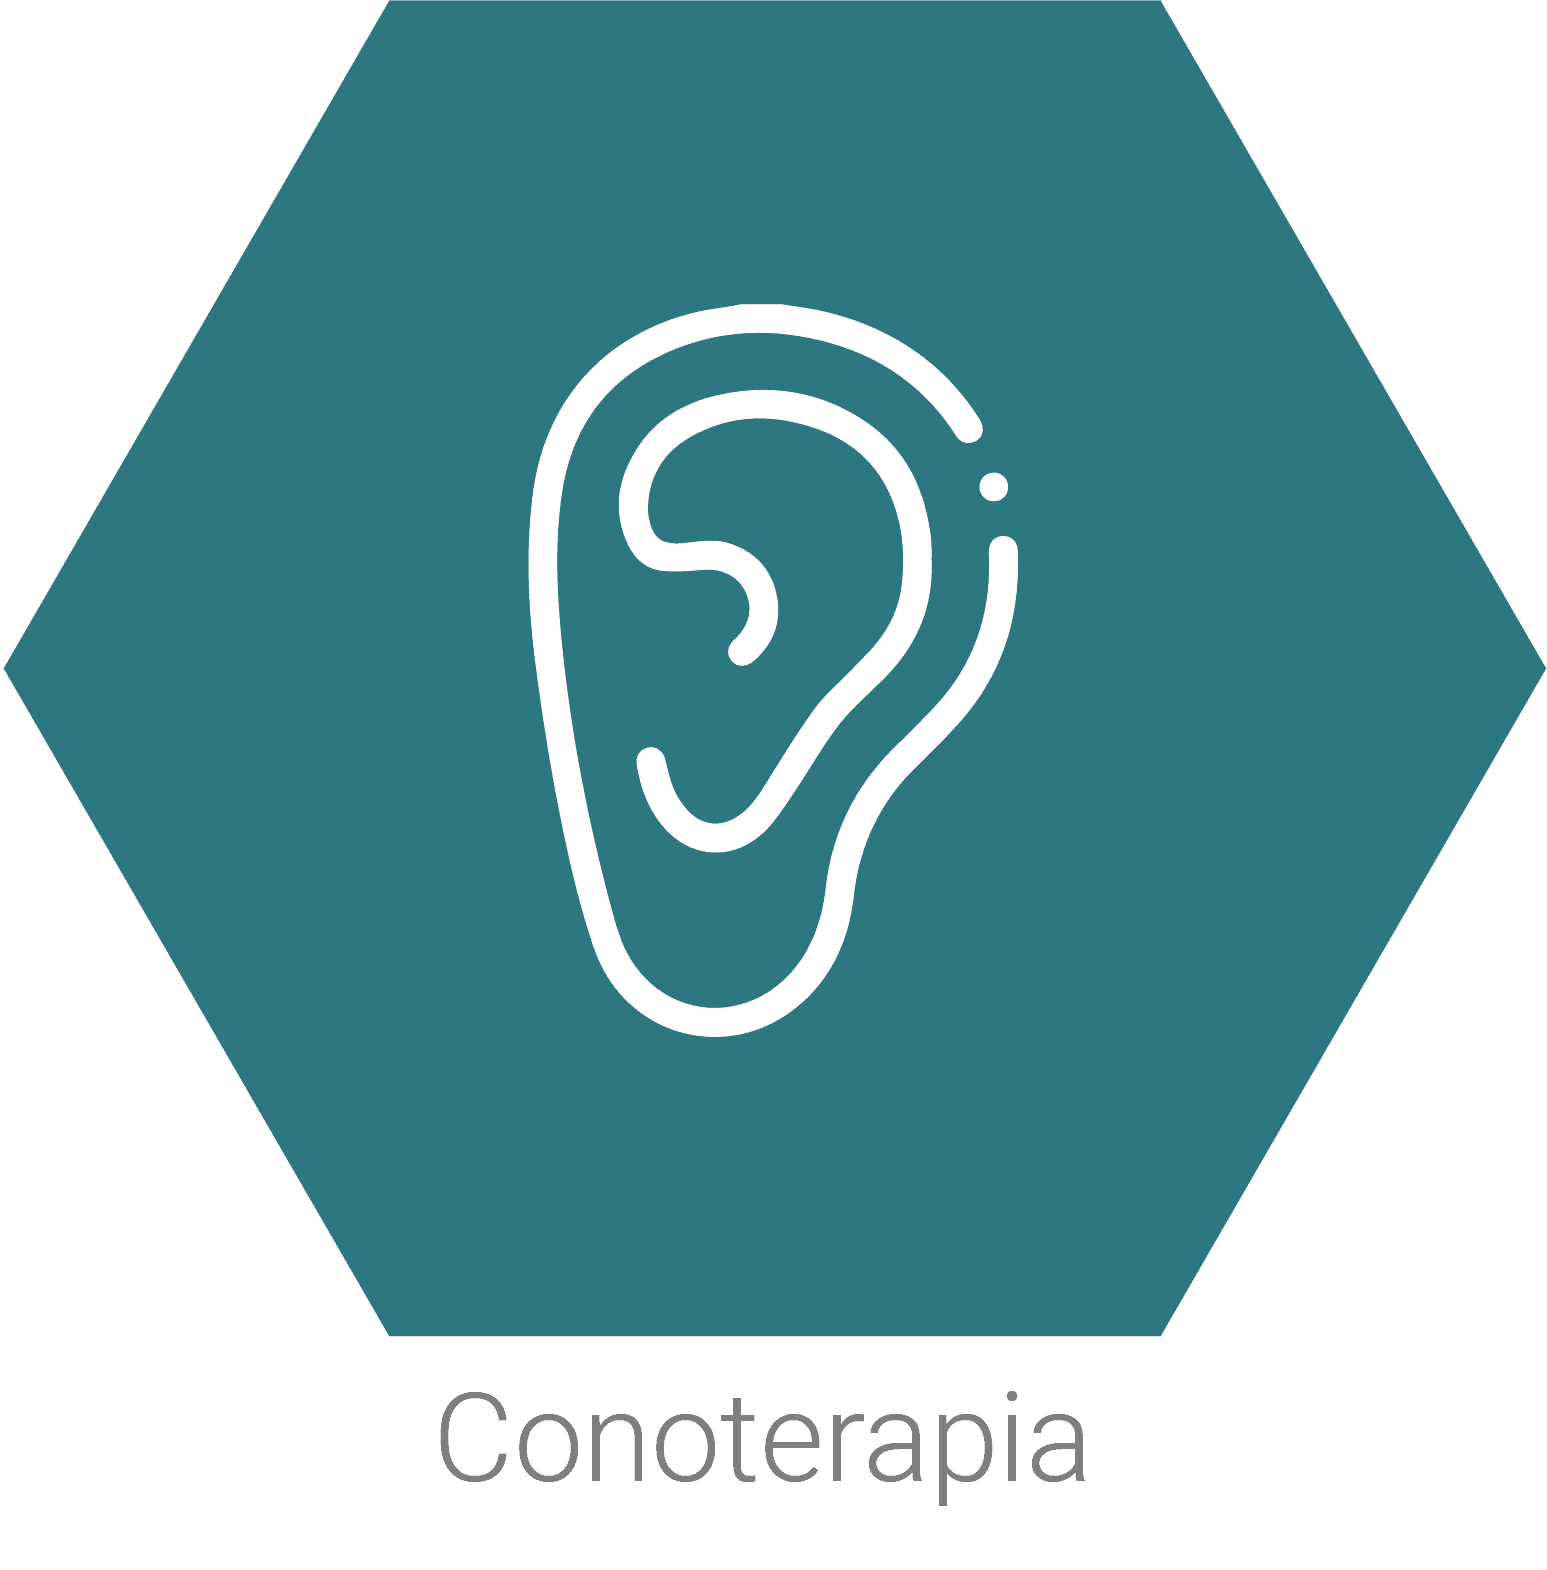 Conoterapia